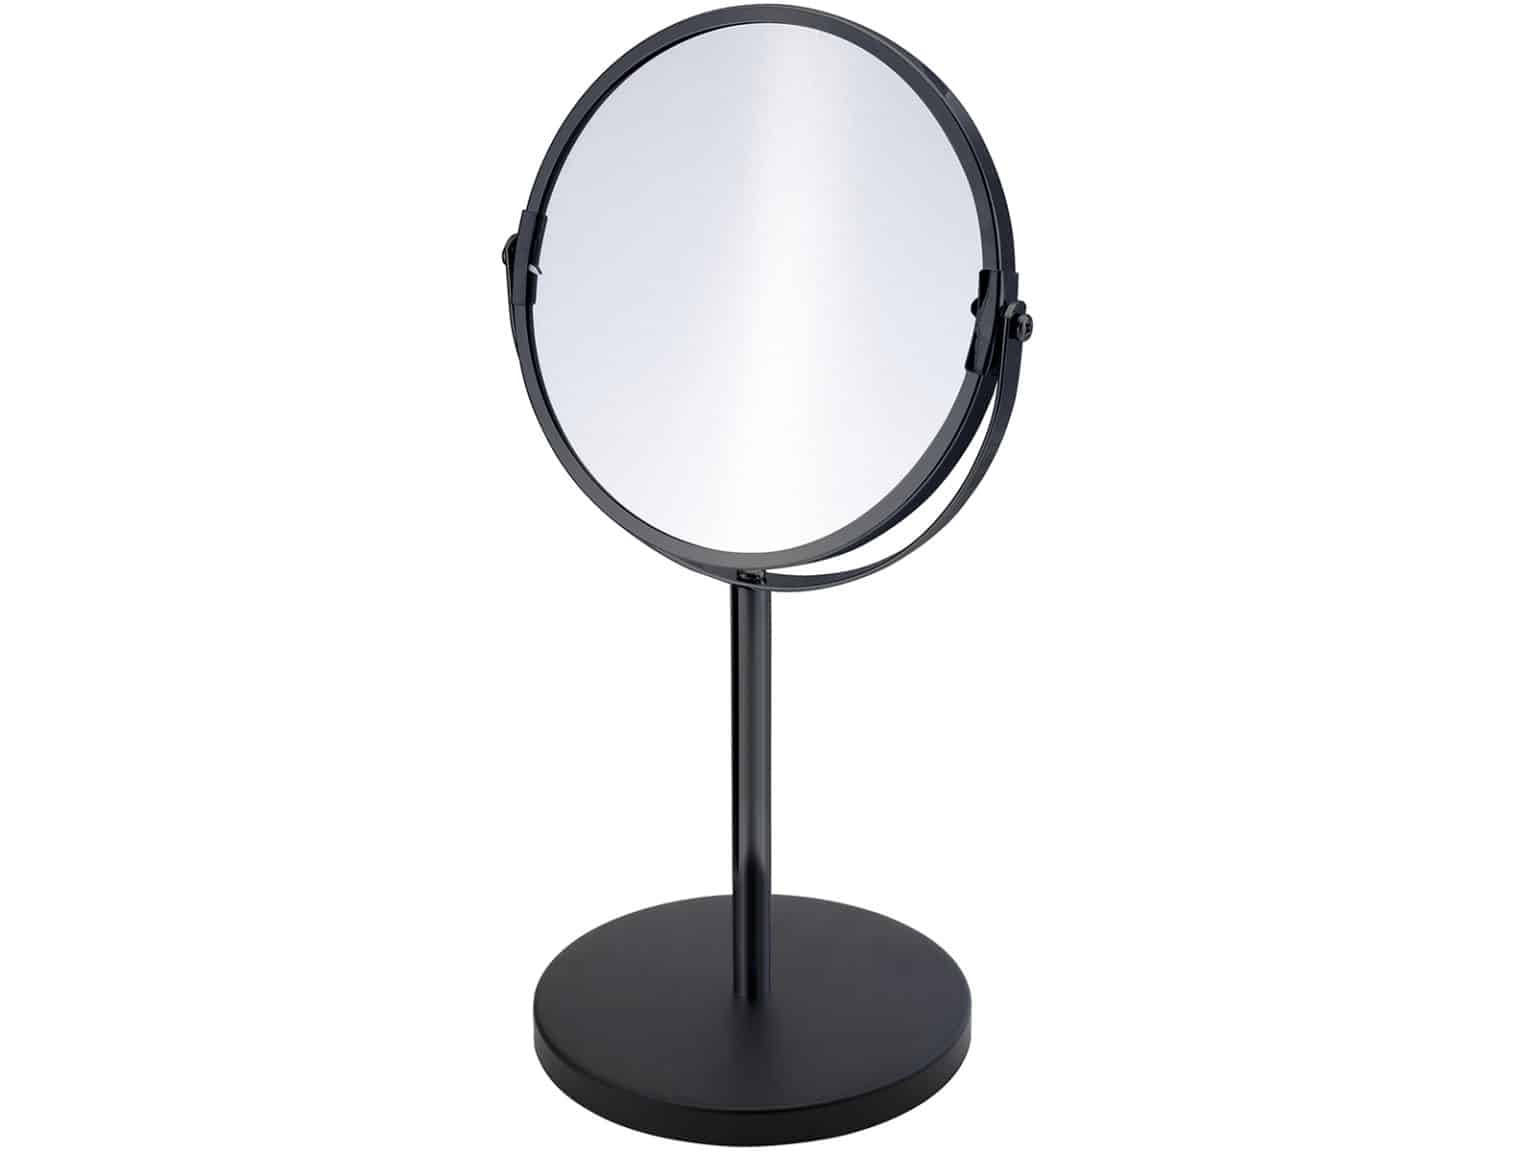 Двухстороннее зеркало купить. Lassbyn лассбюн зеркало настольное, золотой17 см. Икеа зеркало настольное лассбюн. Lassbyn лассбюн зеркало настольное 17 см серебристый. Косметическое зеркало поворотное.